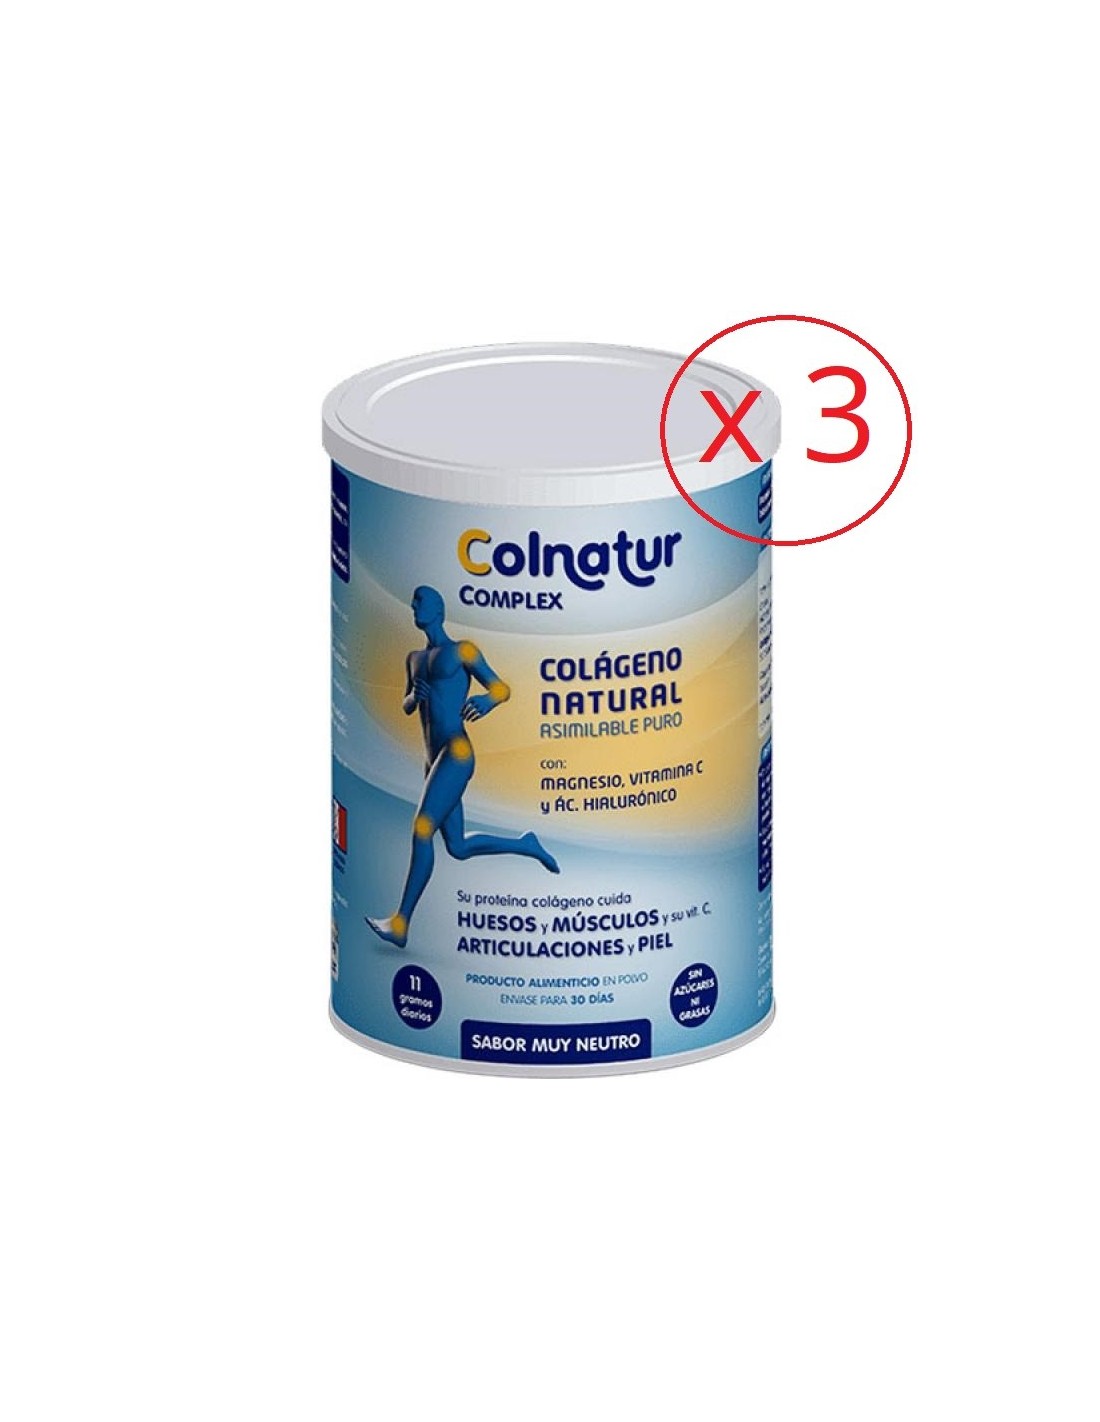 Colnatur Complex sabor neutro 330g 3 unidades